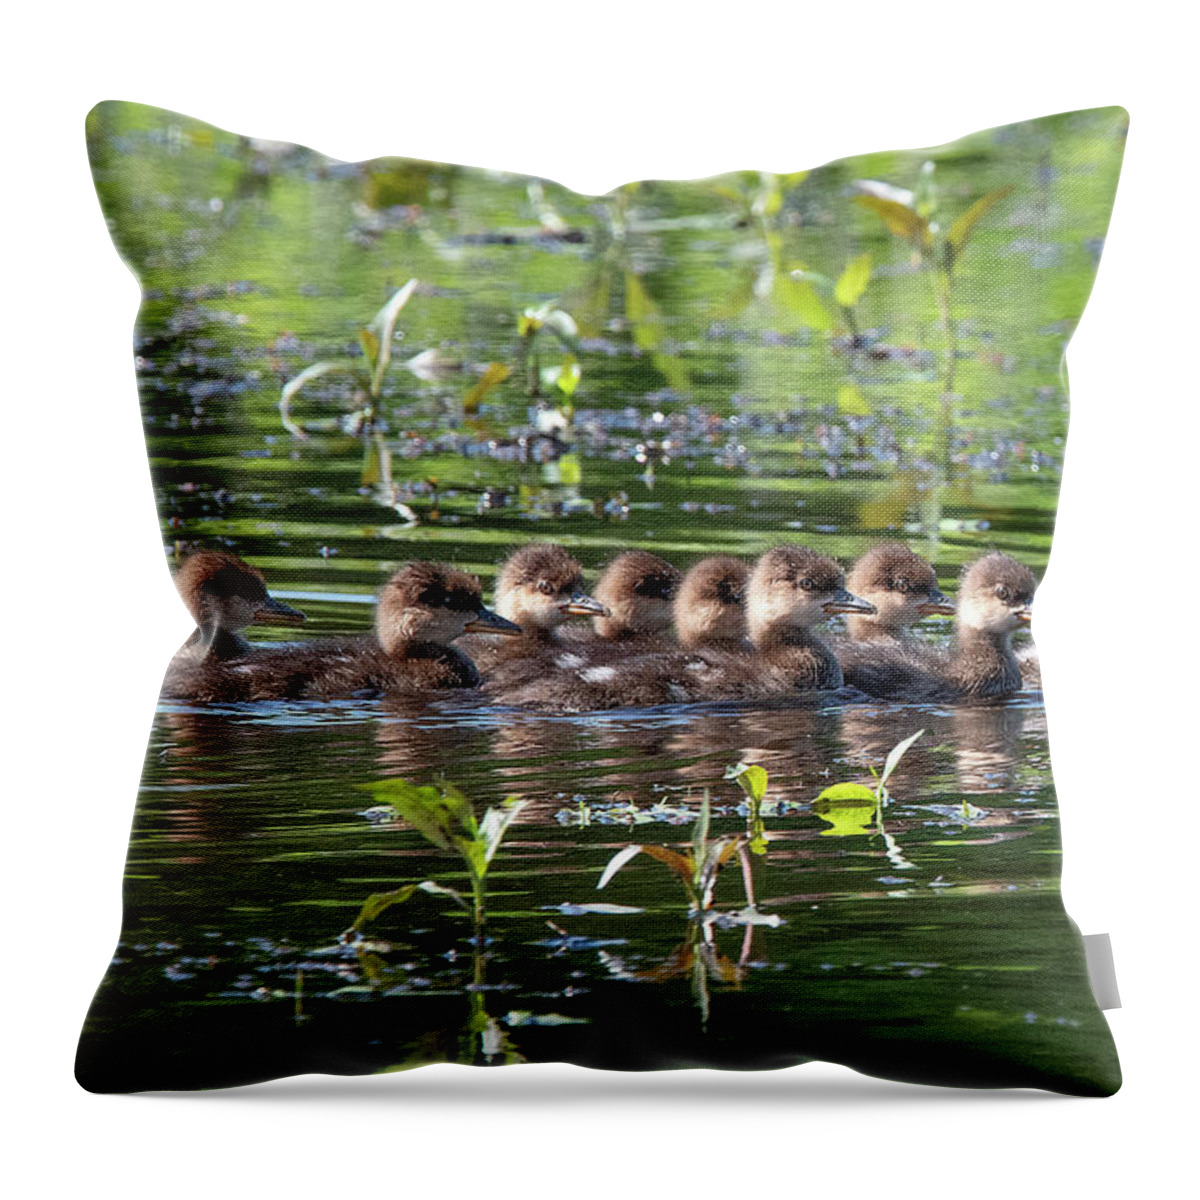 Nature Throw Pillow featuring the photograph Hooded Merganser Ducklings DWF0203 by Gerry Gantt